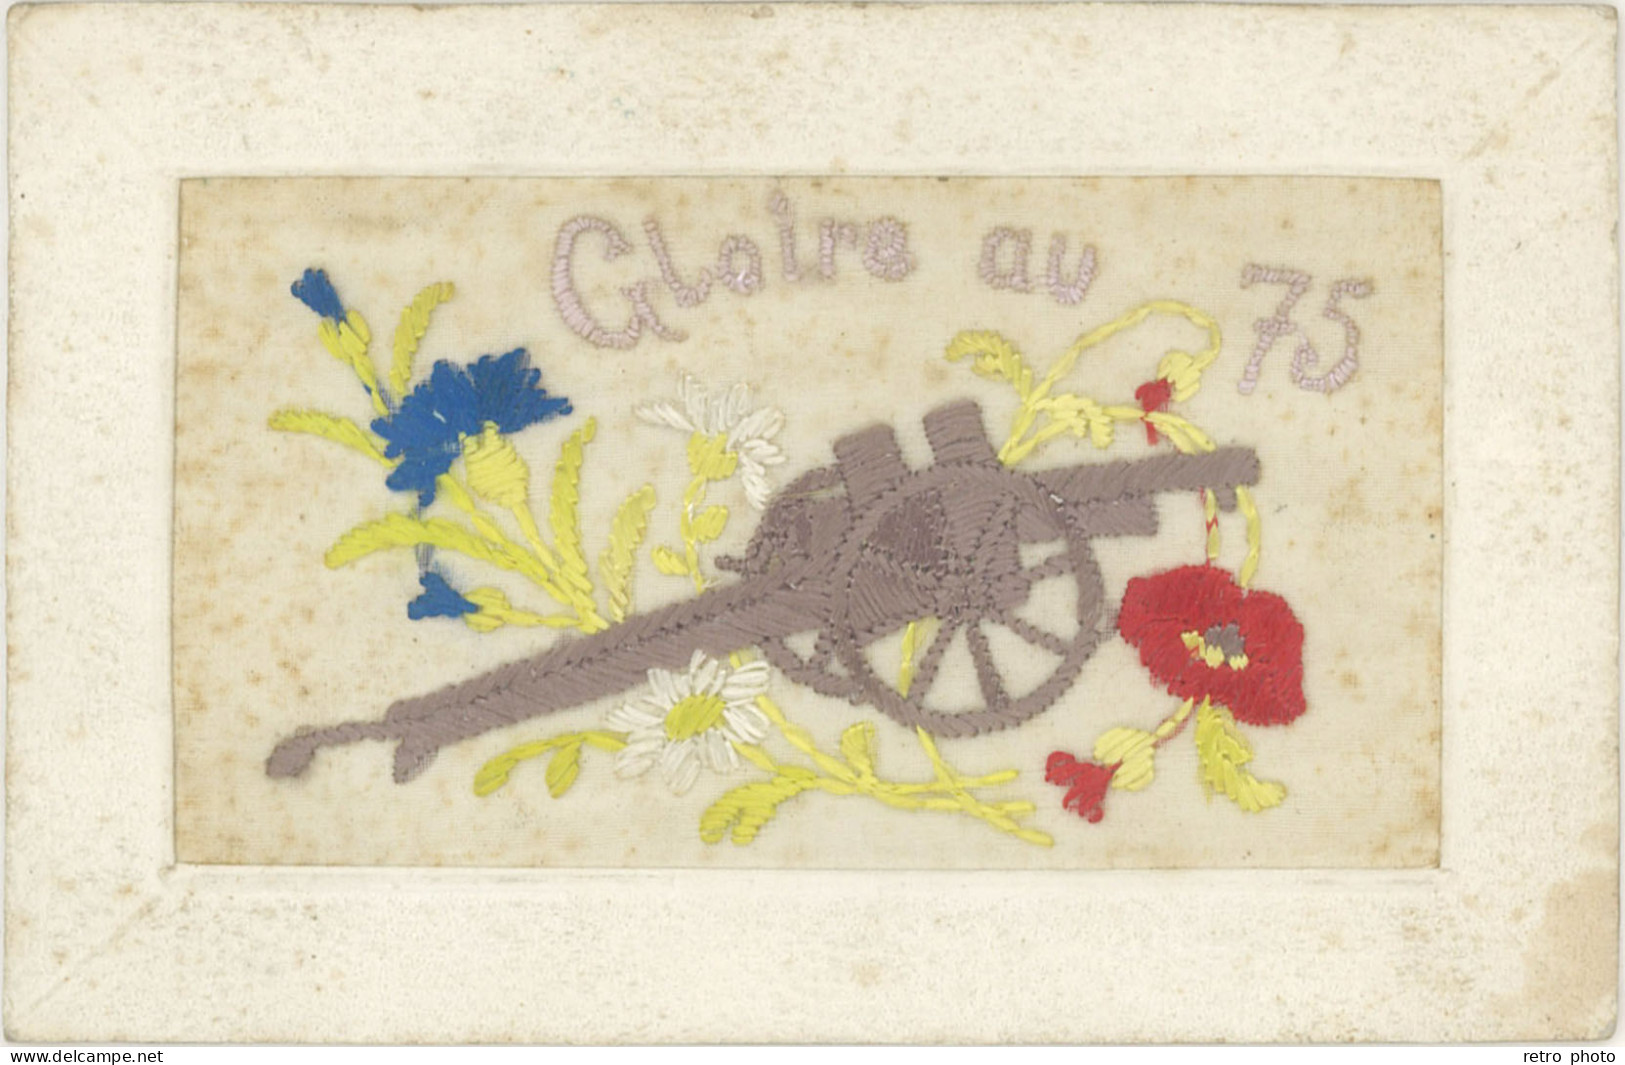 LD Brodée, Gloire Au 75 ( Canon , Patriotique ) - Embroidered